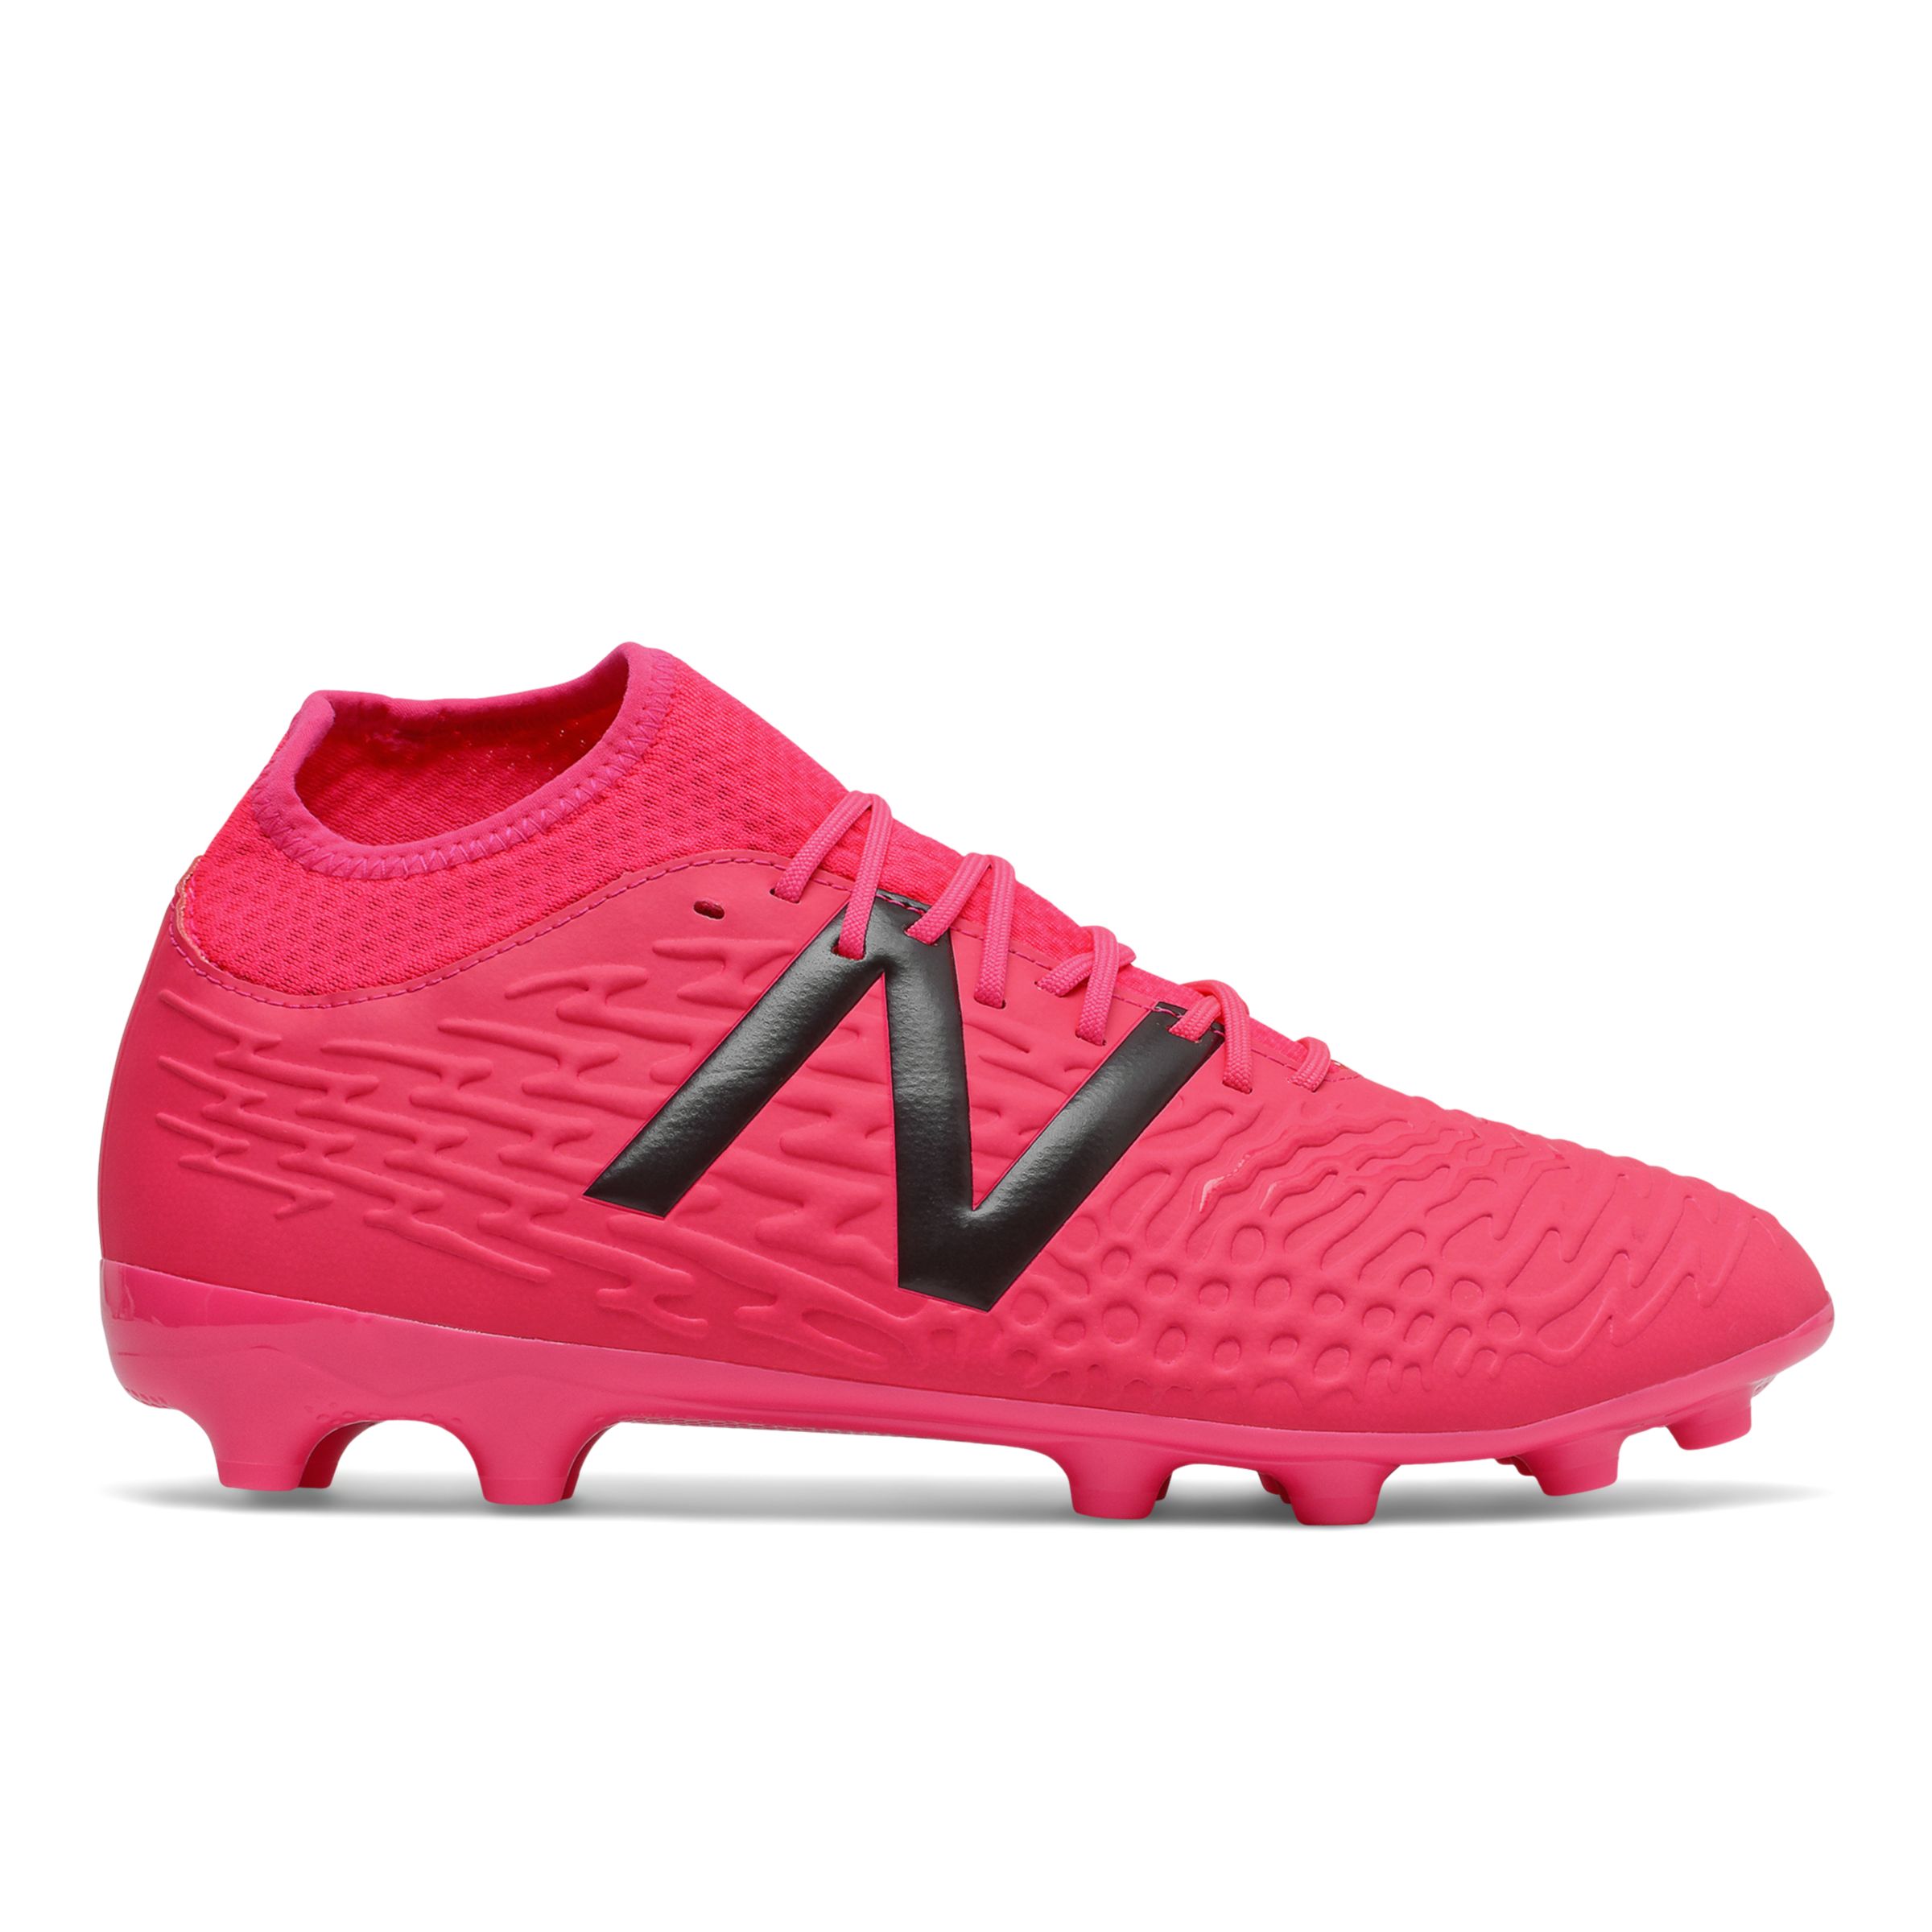 Men's Footwear New Balance Tekeela V3+ Magique AG - Hombres EU 40.5, Pink/Red